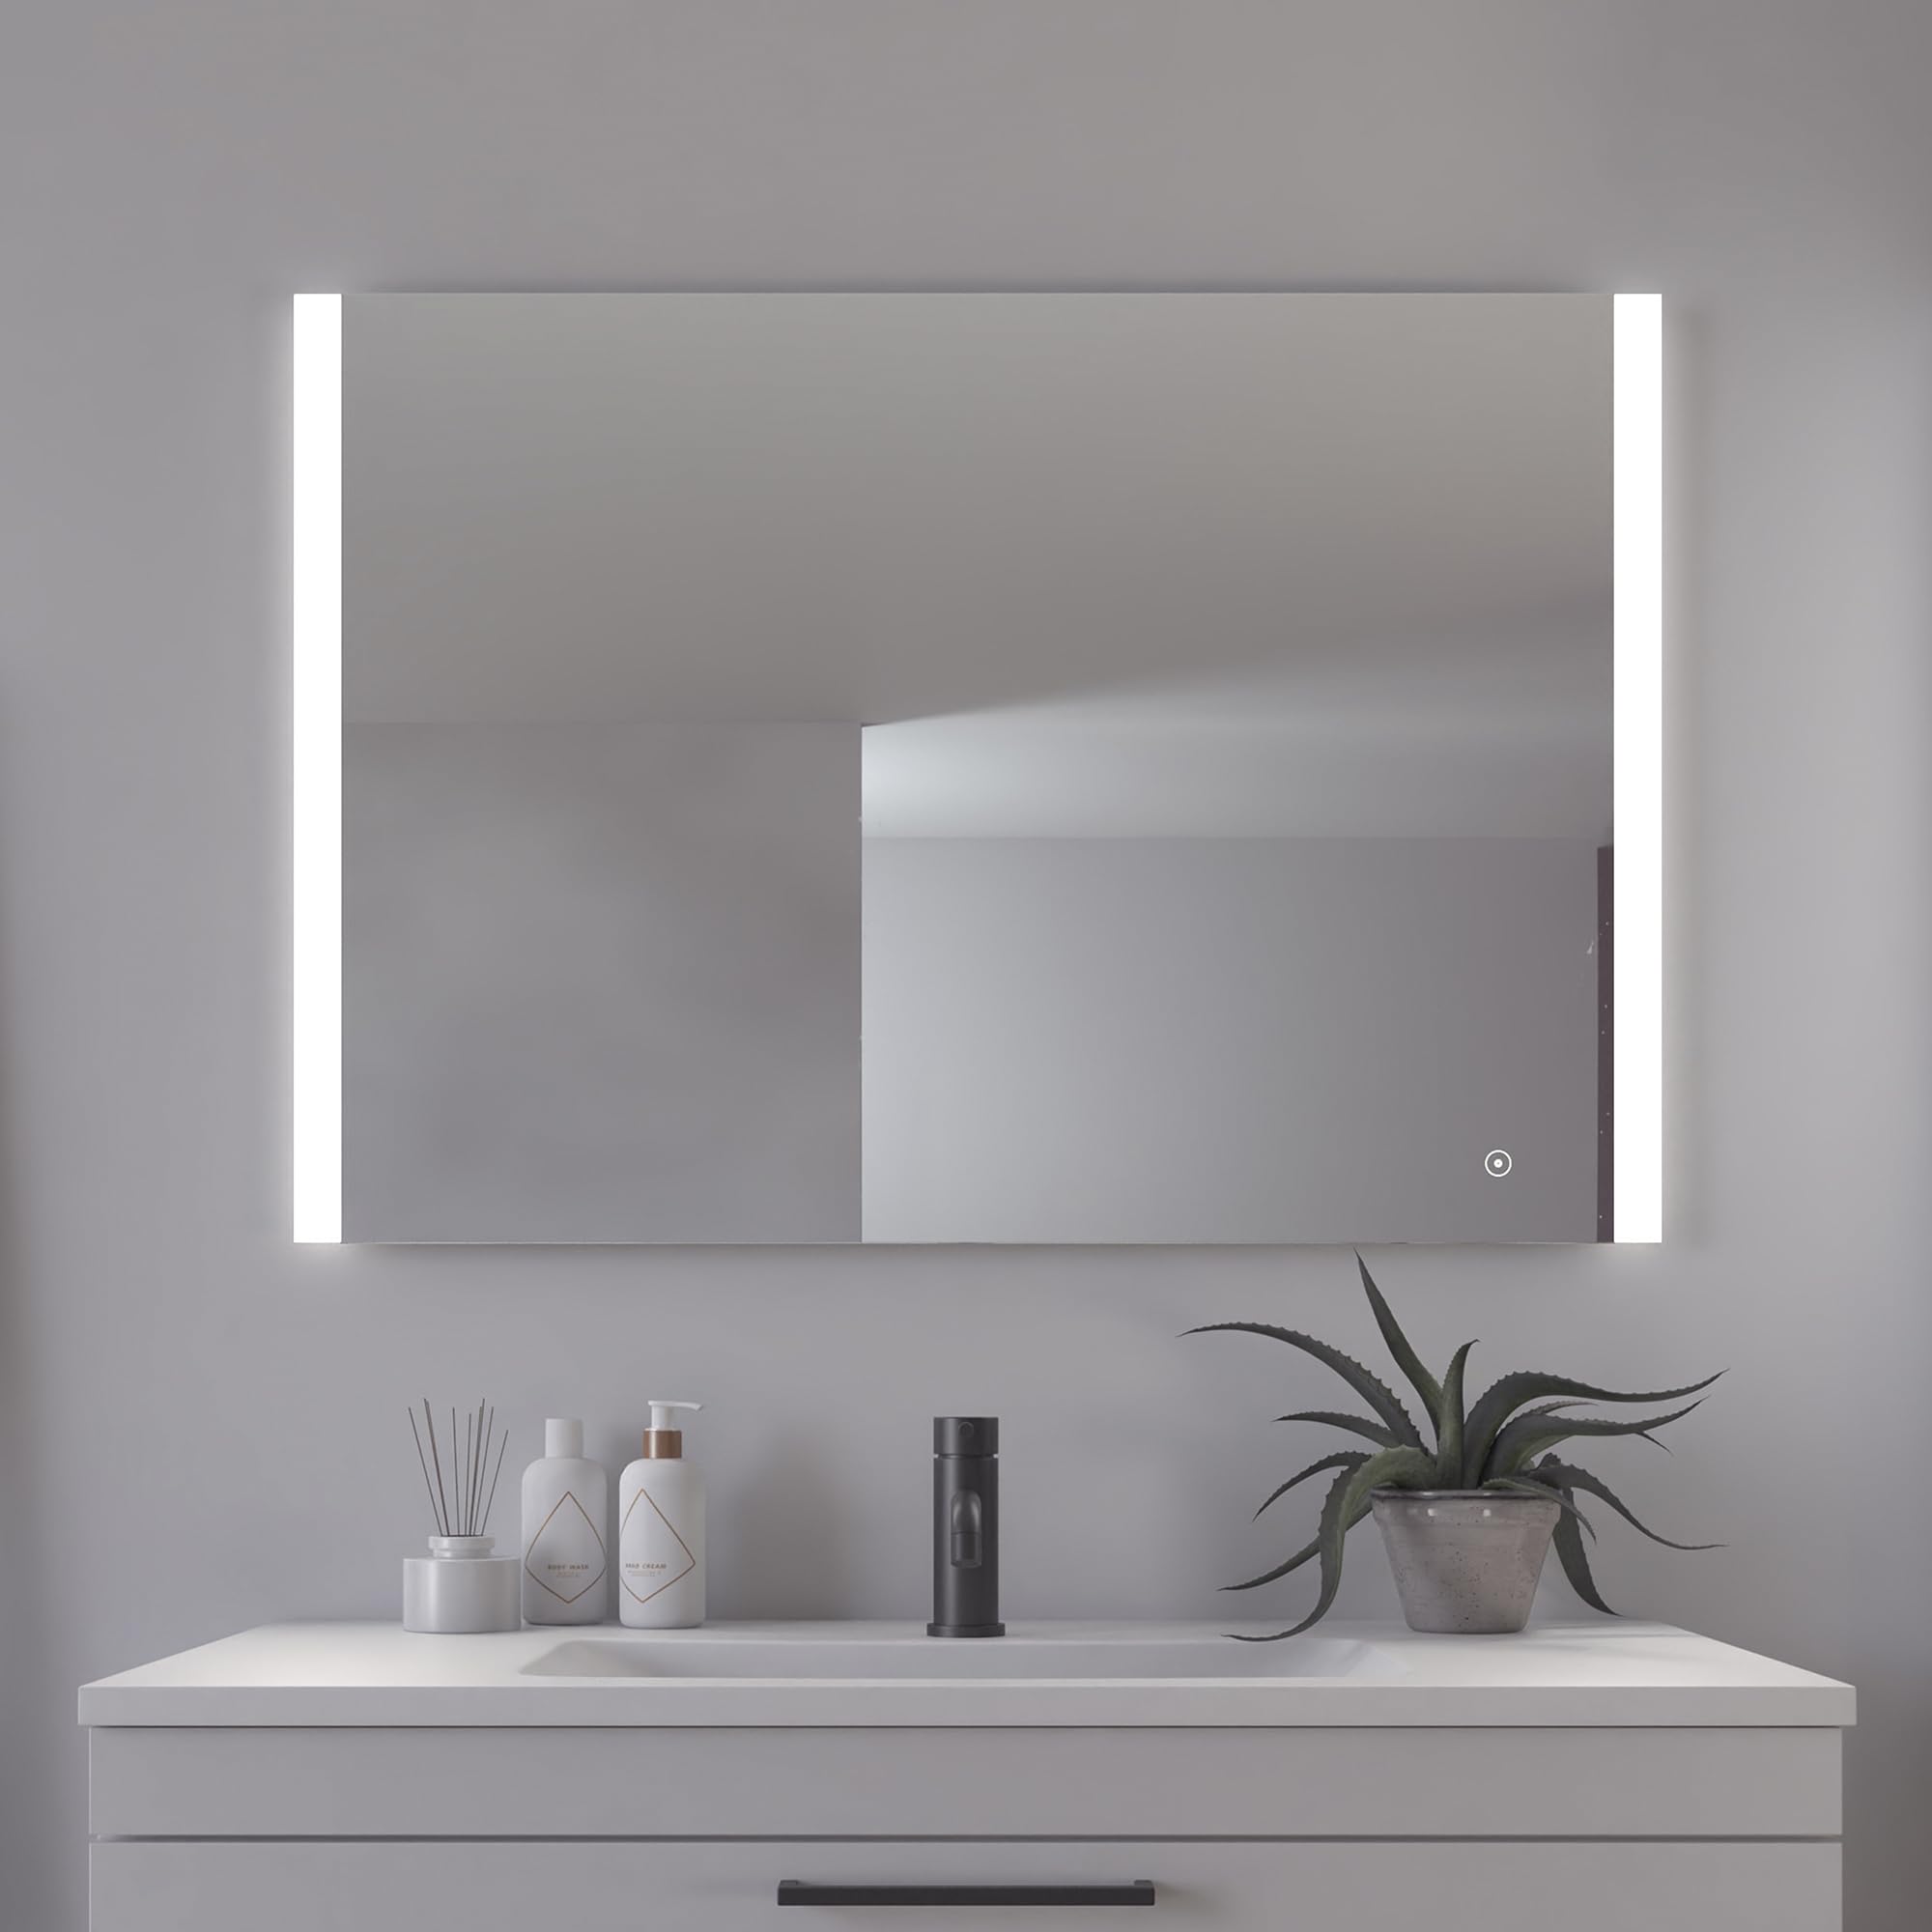 Loevschall Vega Quadratischer Spiegel mit Beleuchtung | Led Spiegel Mit Touch-Schalter 1000x700 | Badspiegel Mit Led Beleuchtung | Verstellbarer Badezimmerspiegel mit Beleuchtung